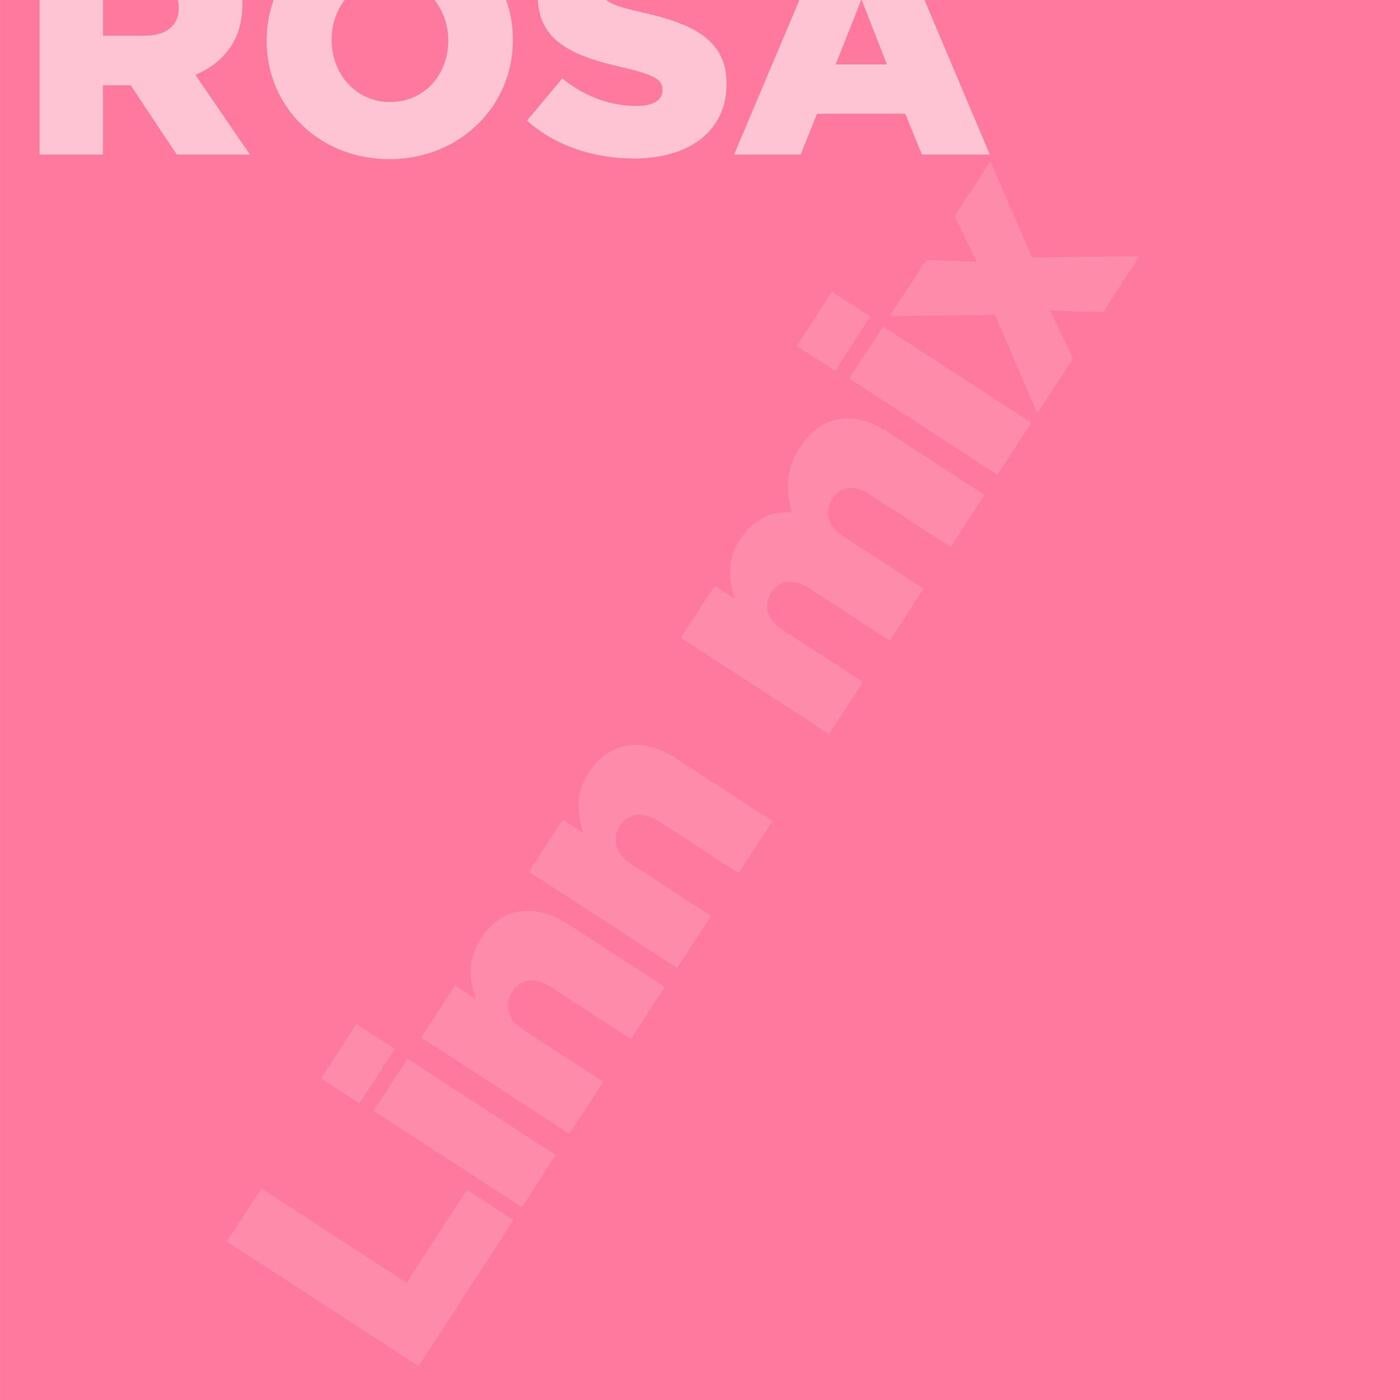 Rosa (Linn Mix)